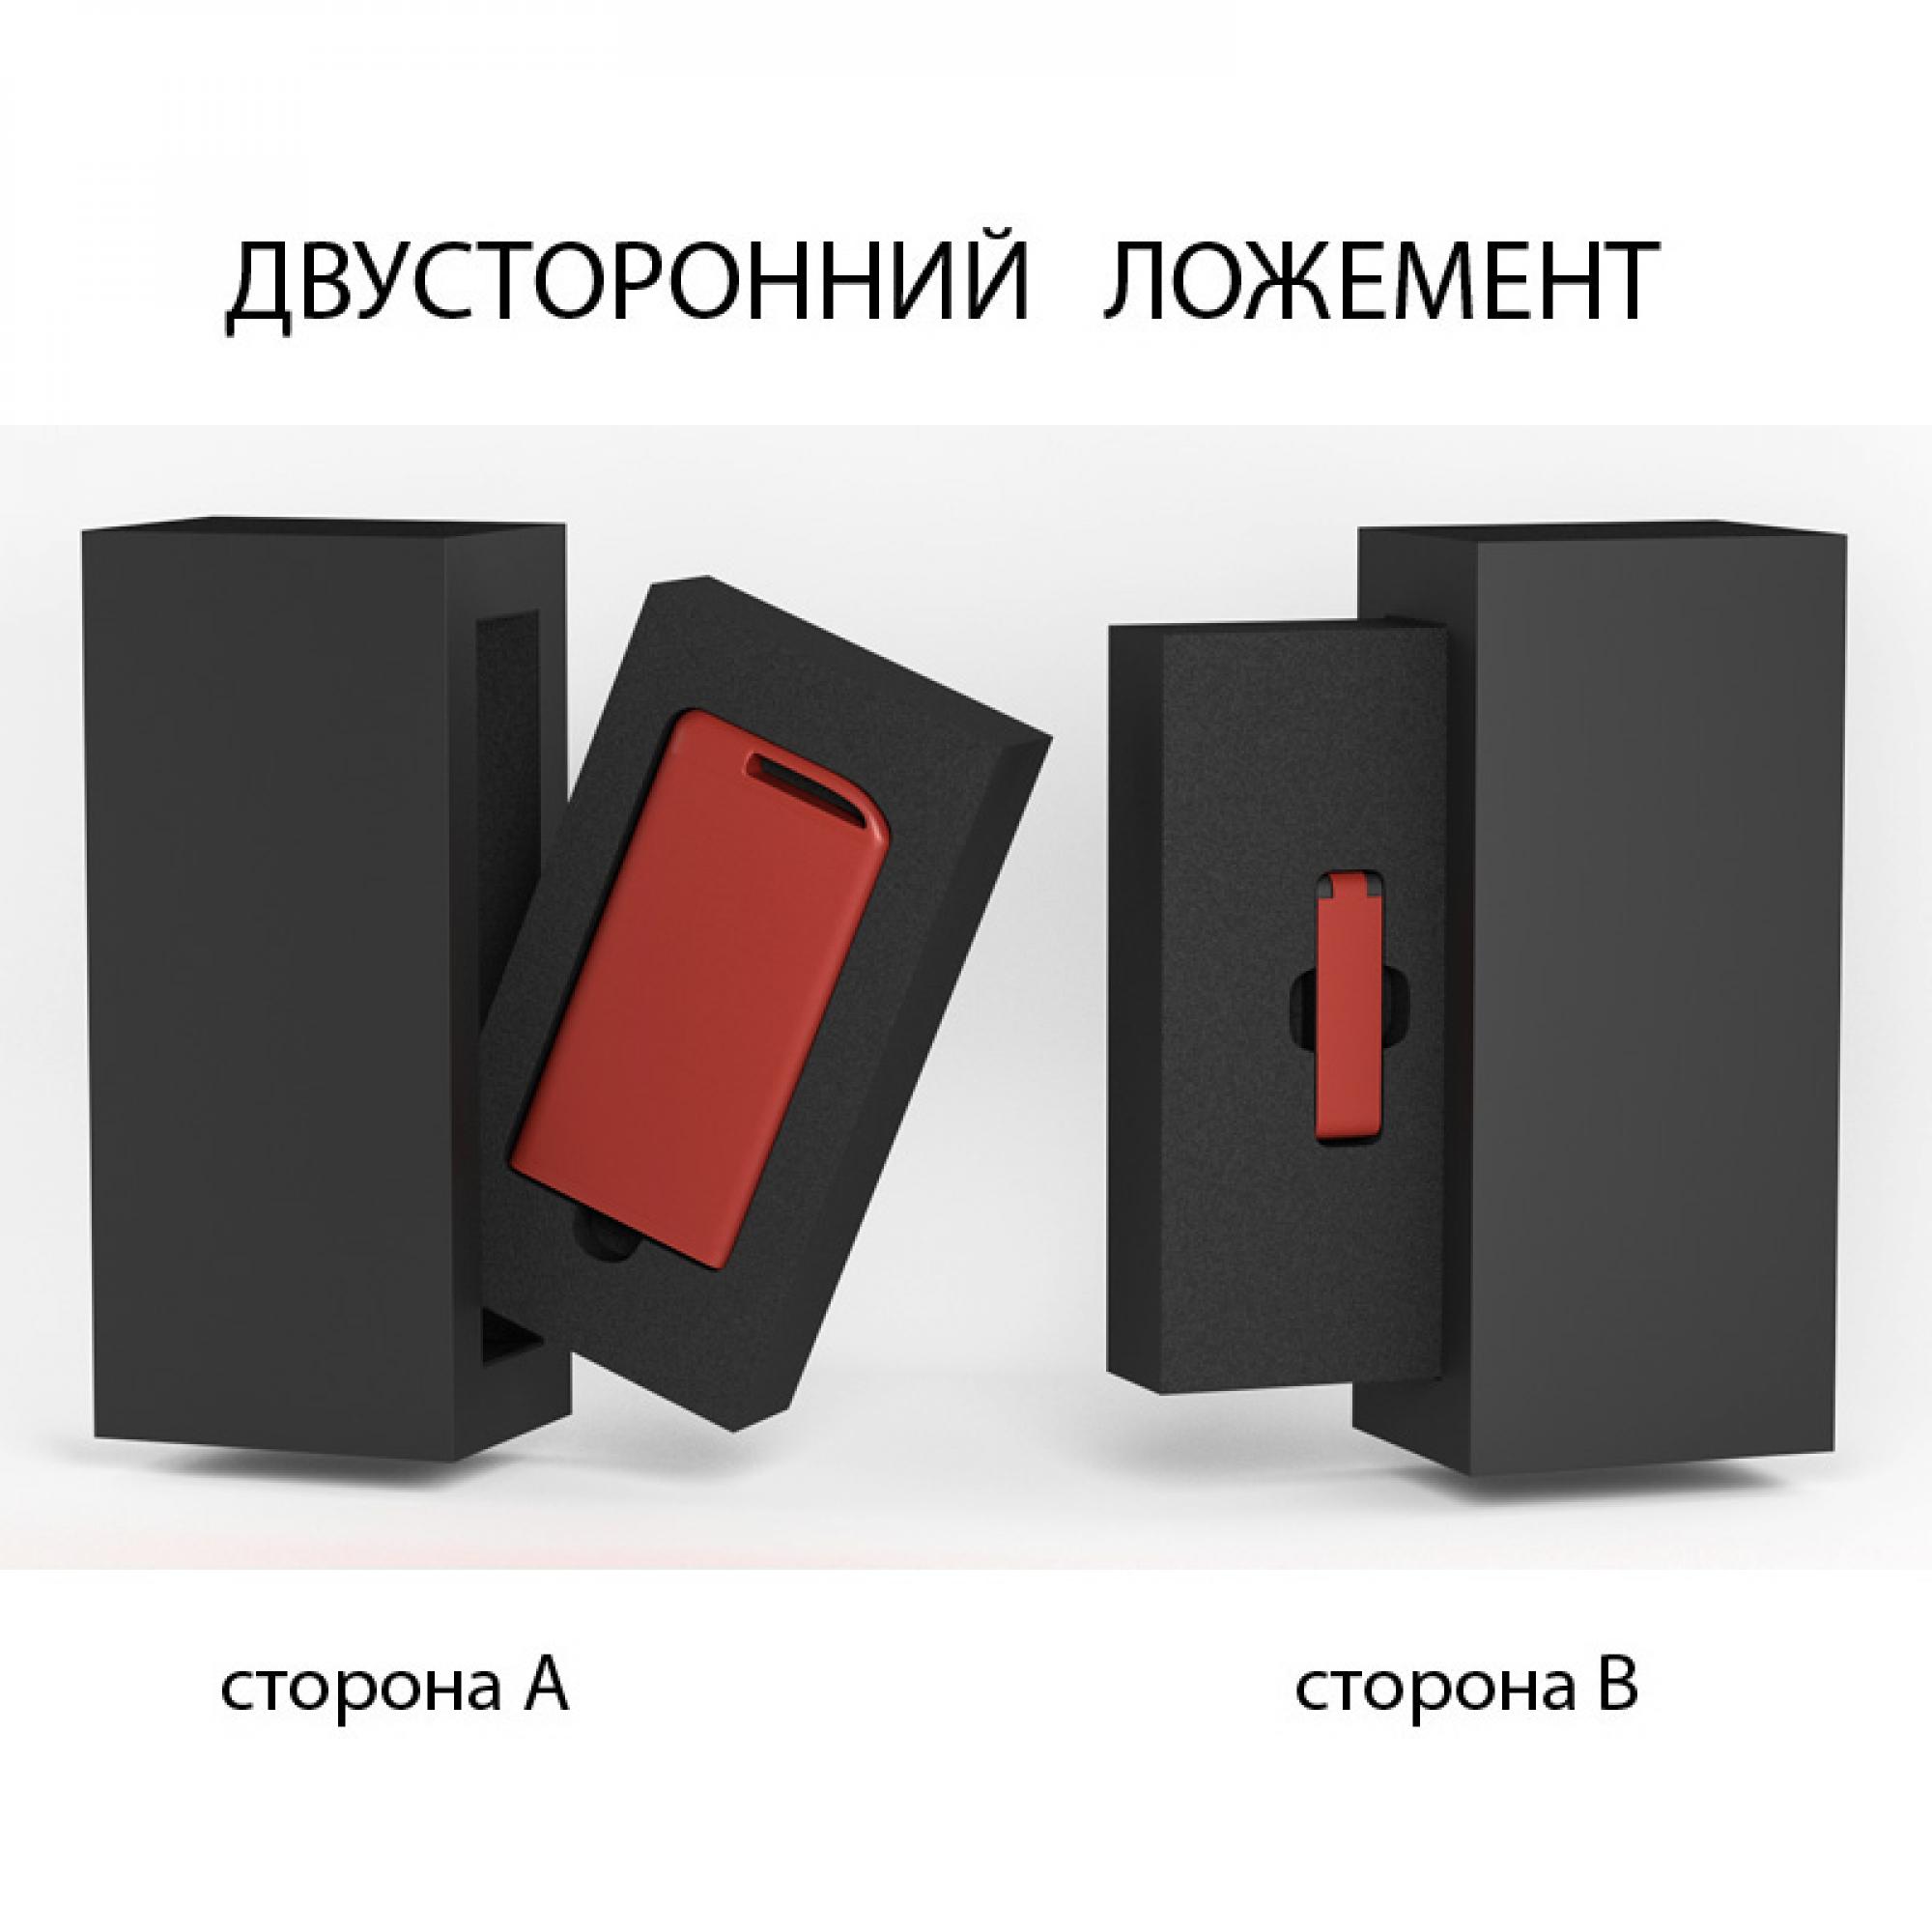 Набор зарядное устройство "Theta" 4000 mAh + флеш-карта "Case" 8Гб в футляре, покрытие soft touch, цвет красный с черным, фото 2